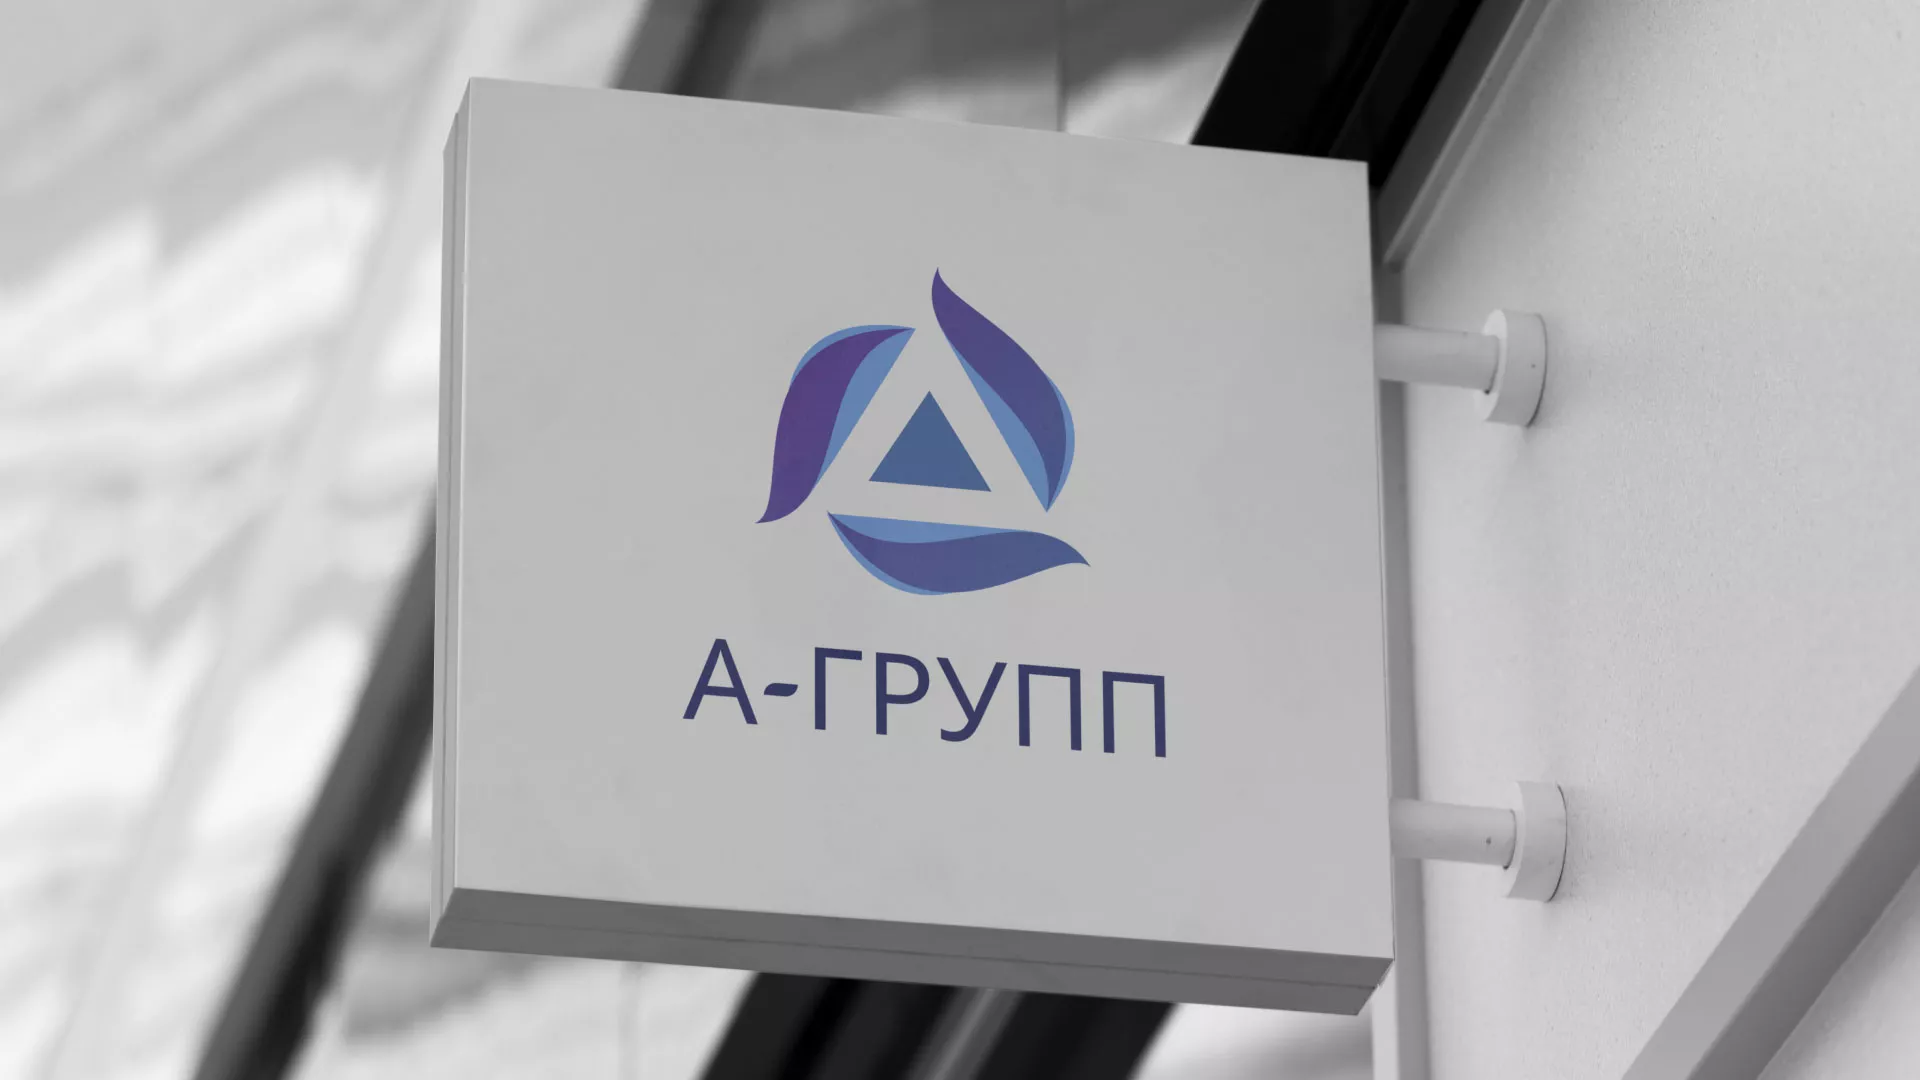 Создание логотипа компании «А-ГРУПП» в Майском